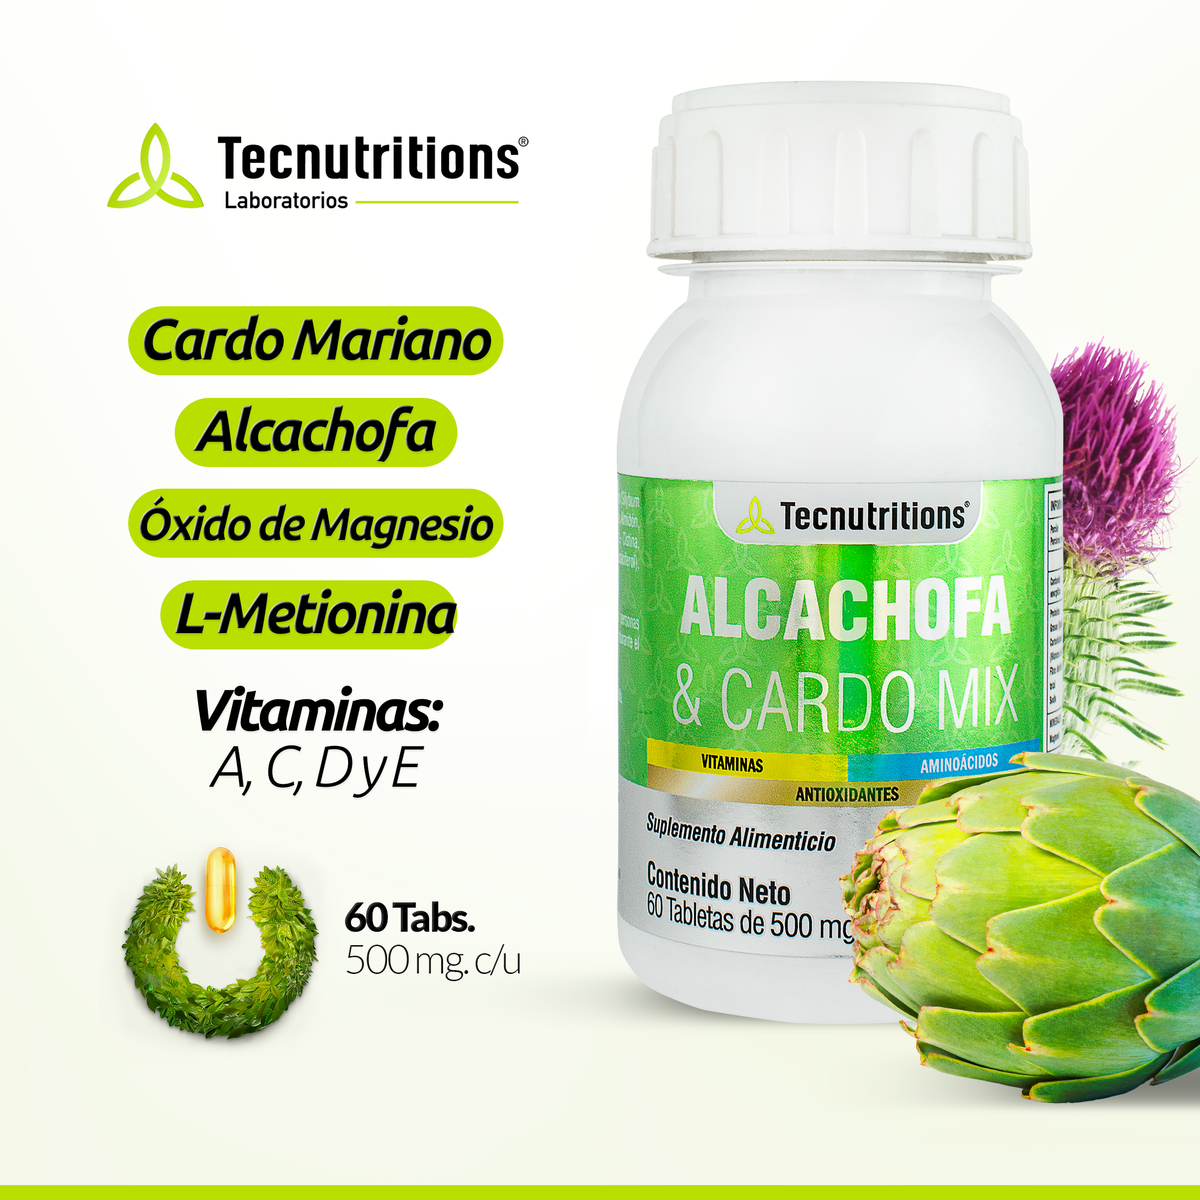 Suplemento alimenticio Alcachofa y Cardo Mix, 60 tabs, con cardo mariano, alcachofa, detox